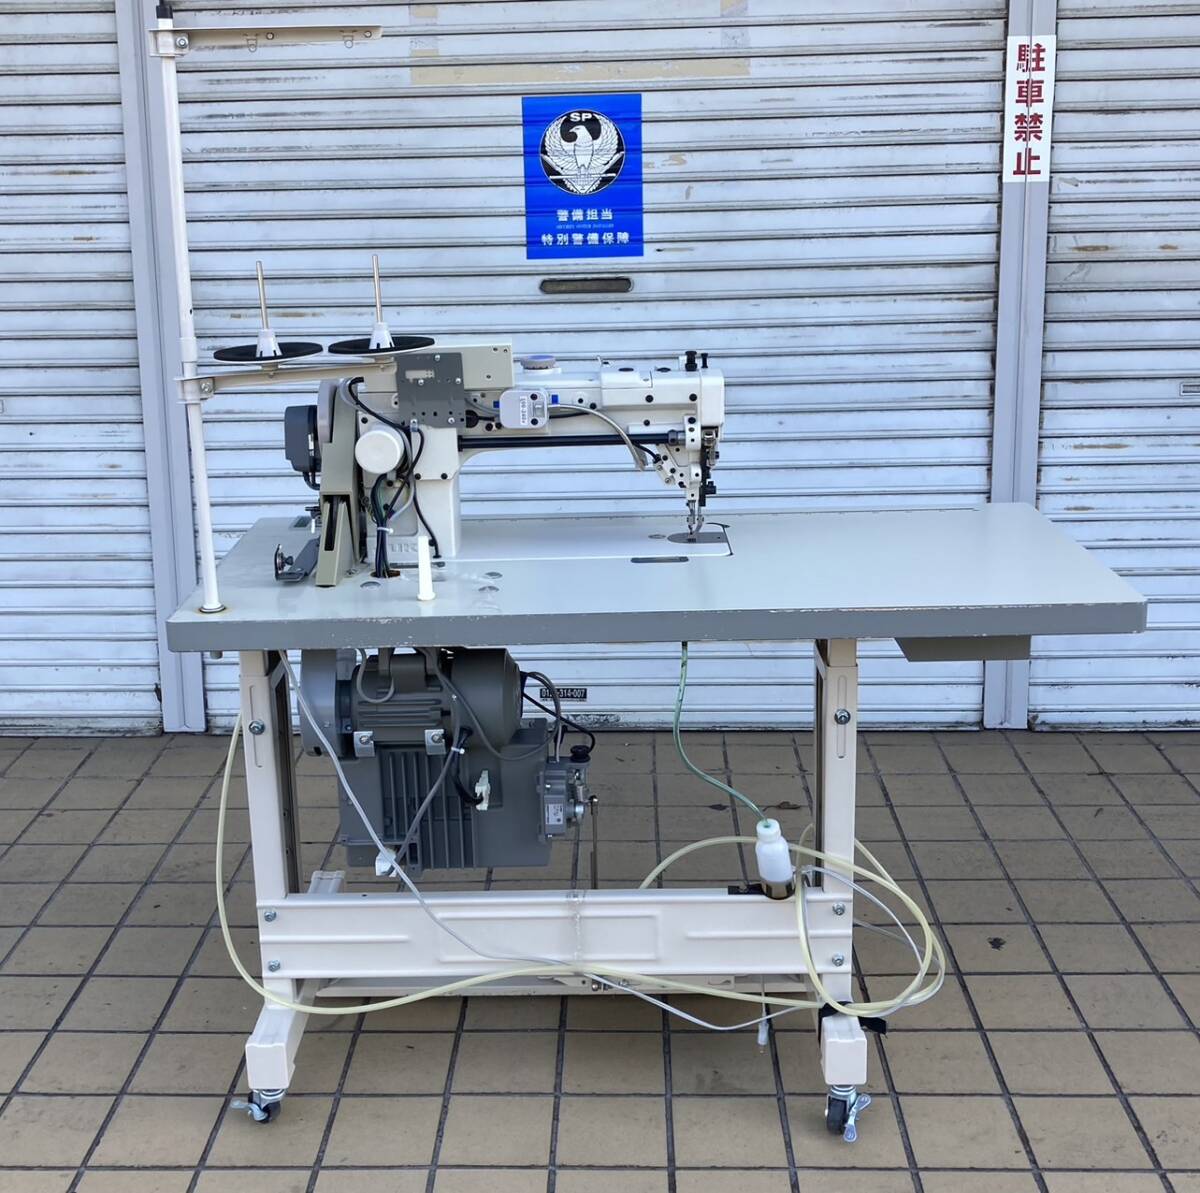 ( бытовая техника )JUKI Juki промышленность для швейная машина DU-1281-7 flat bed швейная машина [ б/у / текущее состояние товар / Kanto region внутри наша компания бесплатный рассылка / др. регион на месте сделка ограничение ]004607-①